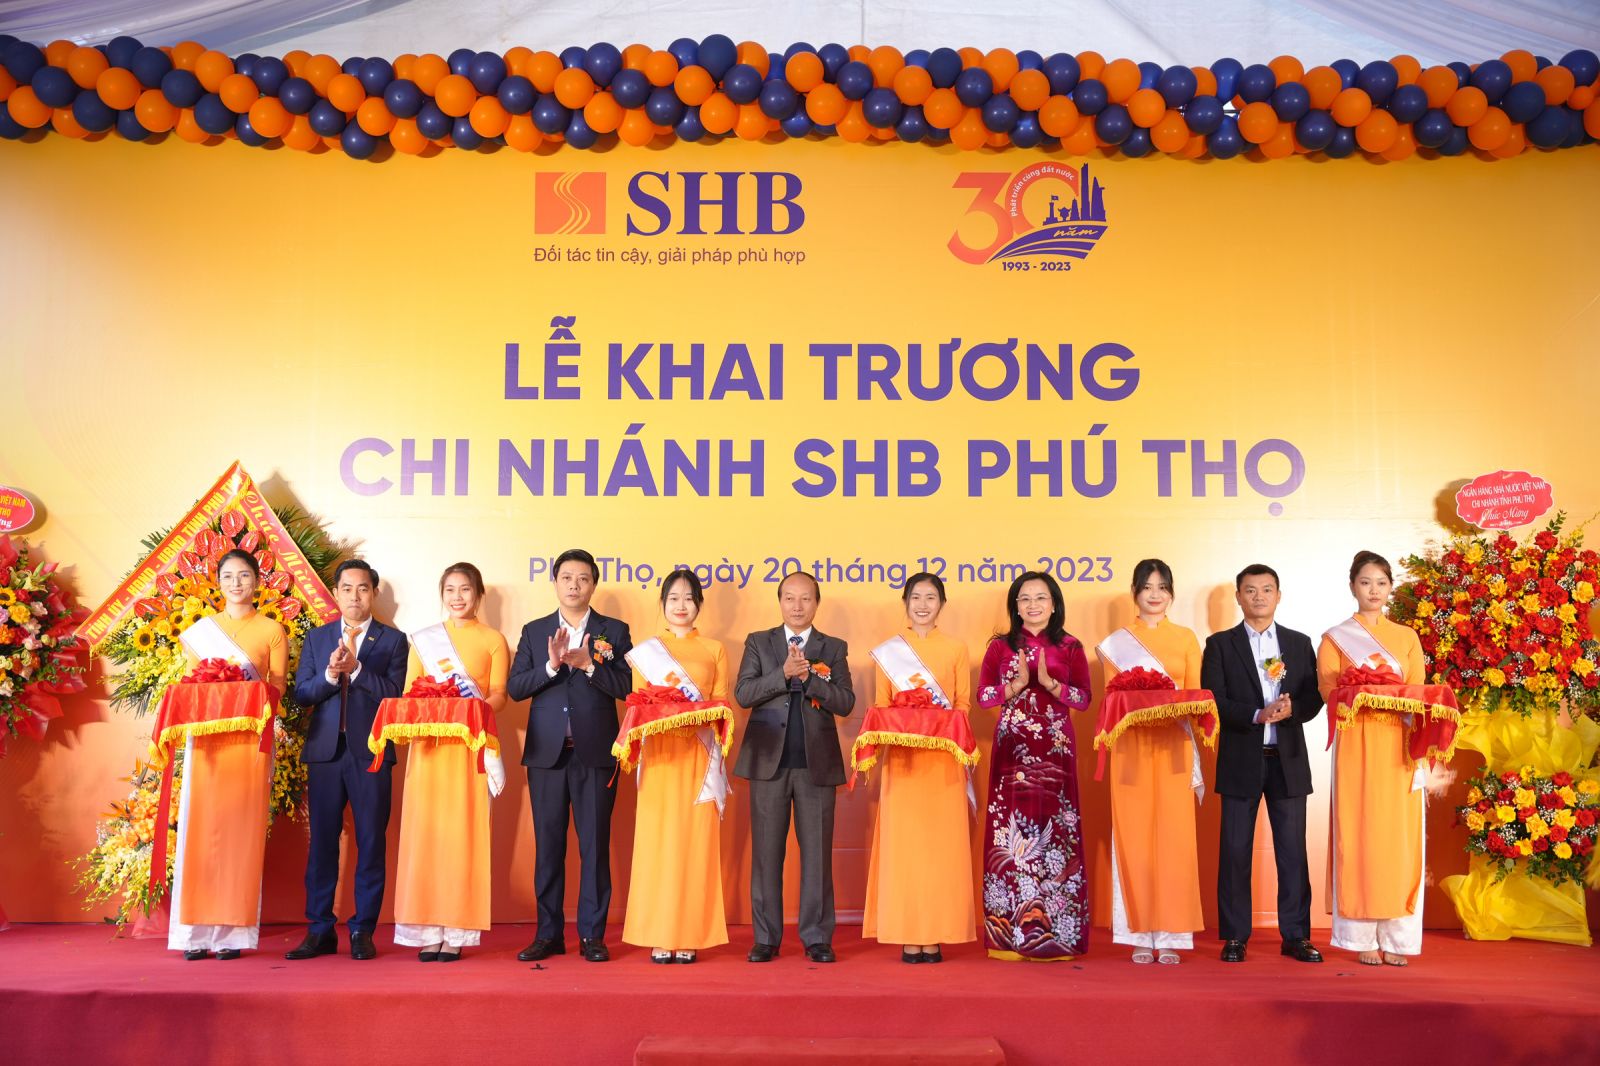 Ngày 20/12, SHB Phú Thọ gia nhập thị trường tài chính địa bàn tỉnh Phú Thọ, hứa hẹn sẽ phục vụ tốt hơn thị trường dịch vụ ngân hàng bán lẻ đầy tiềm năng khu vực Đông Bắc Bộ